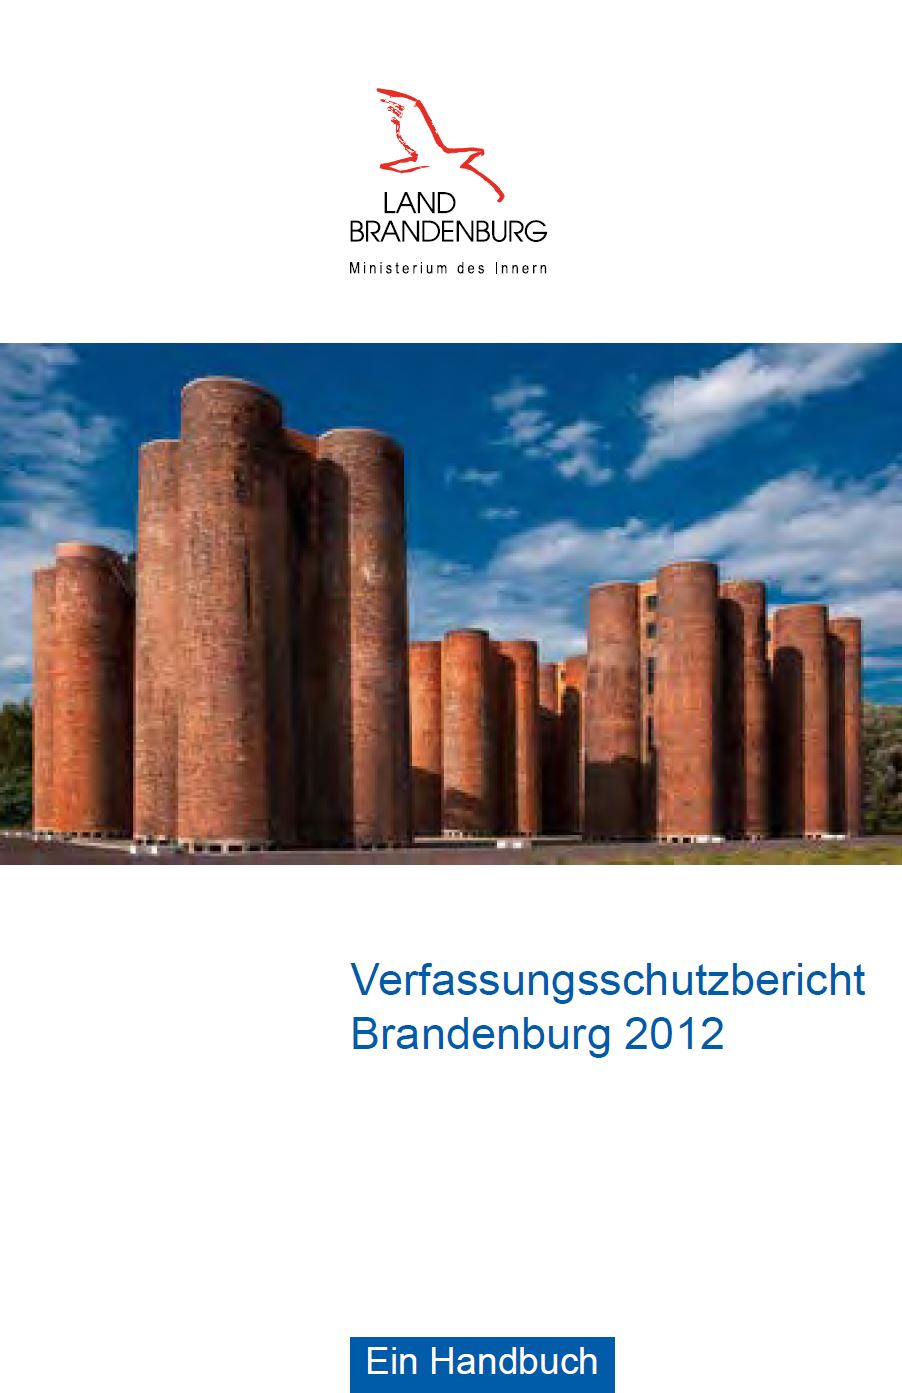 Bild vergrößern (Bild: Titelseite Verfassungsschutzbericht 2012)